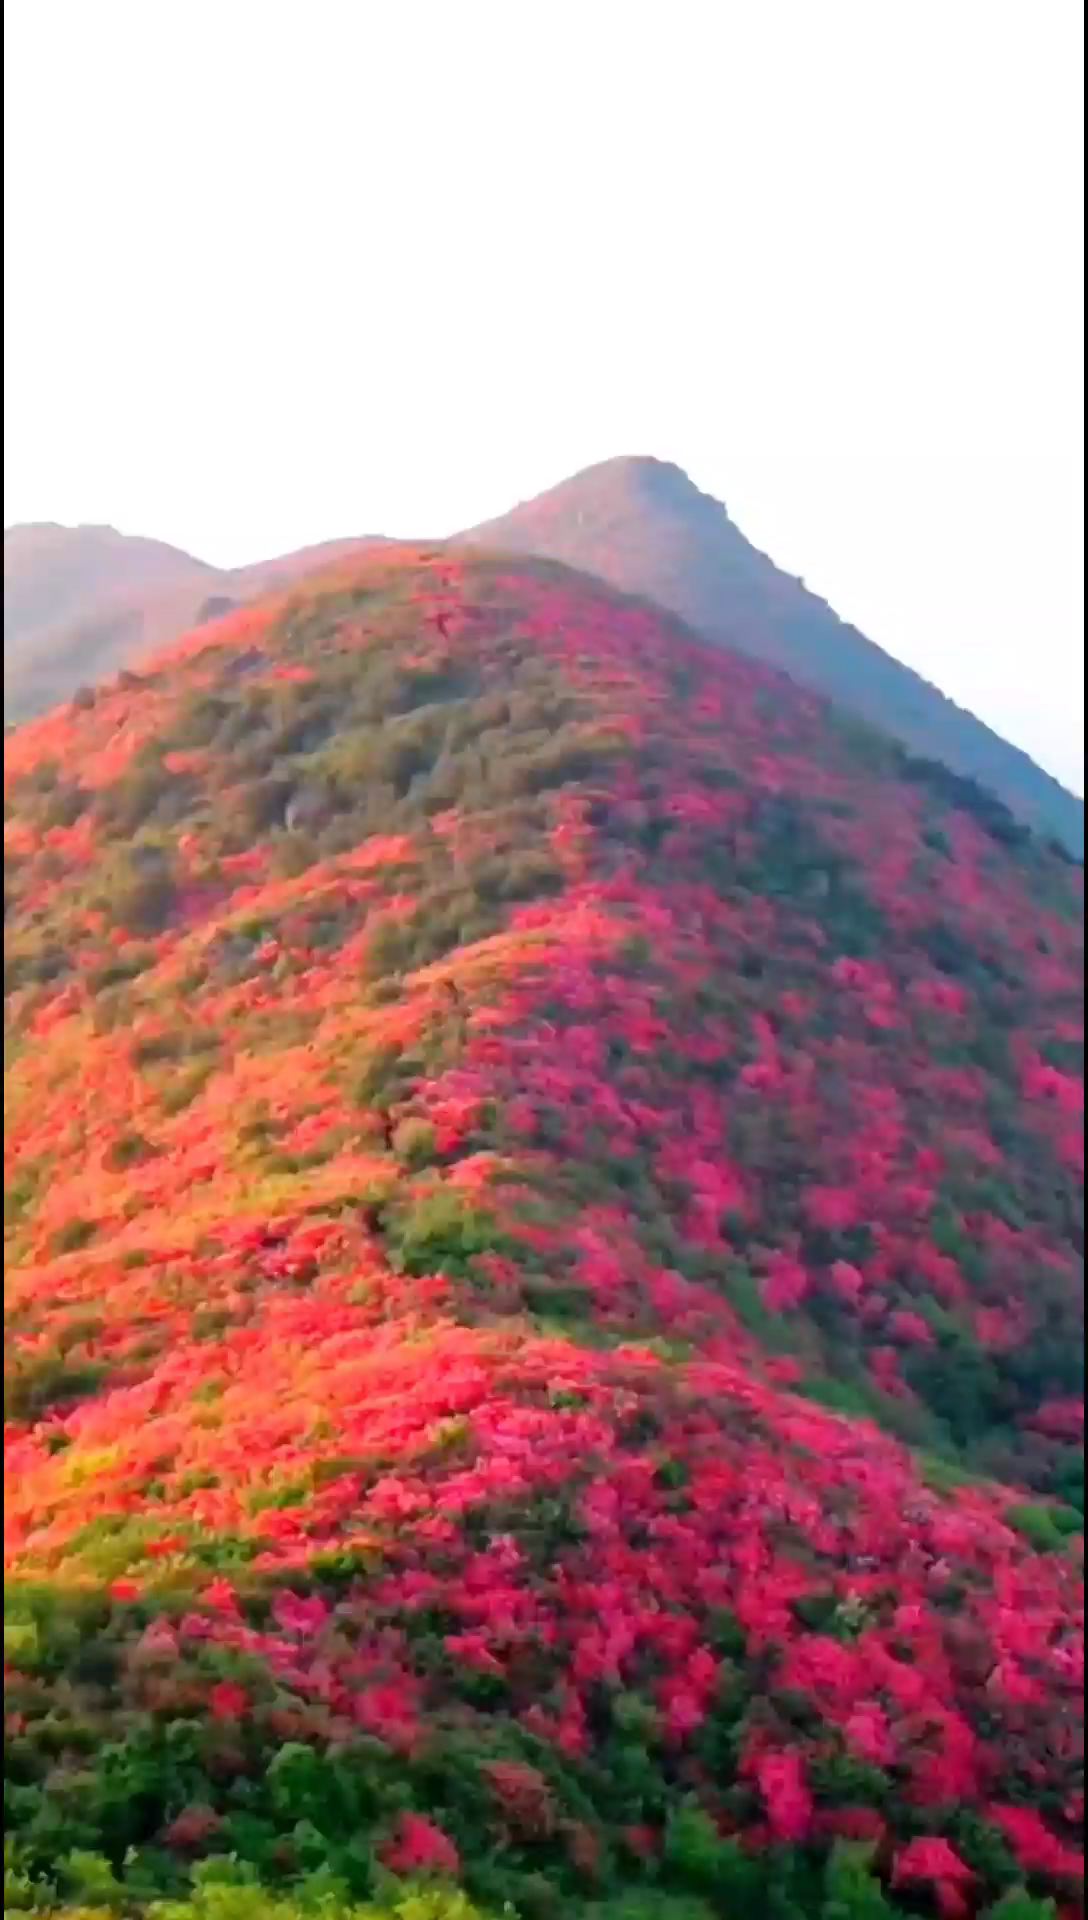 #漫山遍野的杜鹃花有多美 #大山里的风景就是这么美 #隐藏在大山里的世外桃源 #又到登山赏红叶的好时